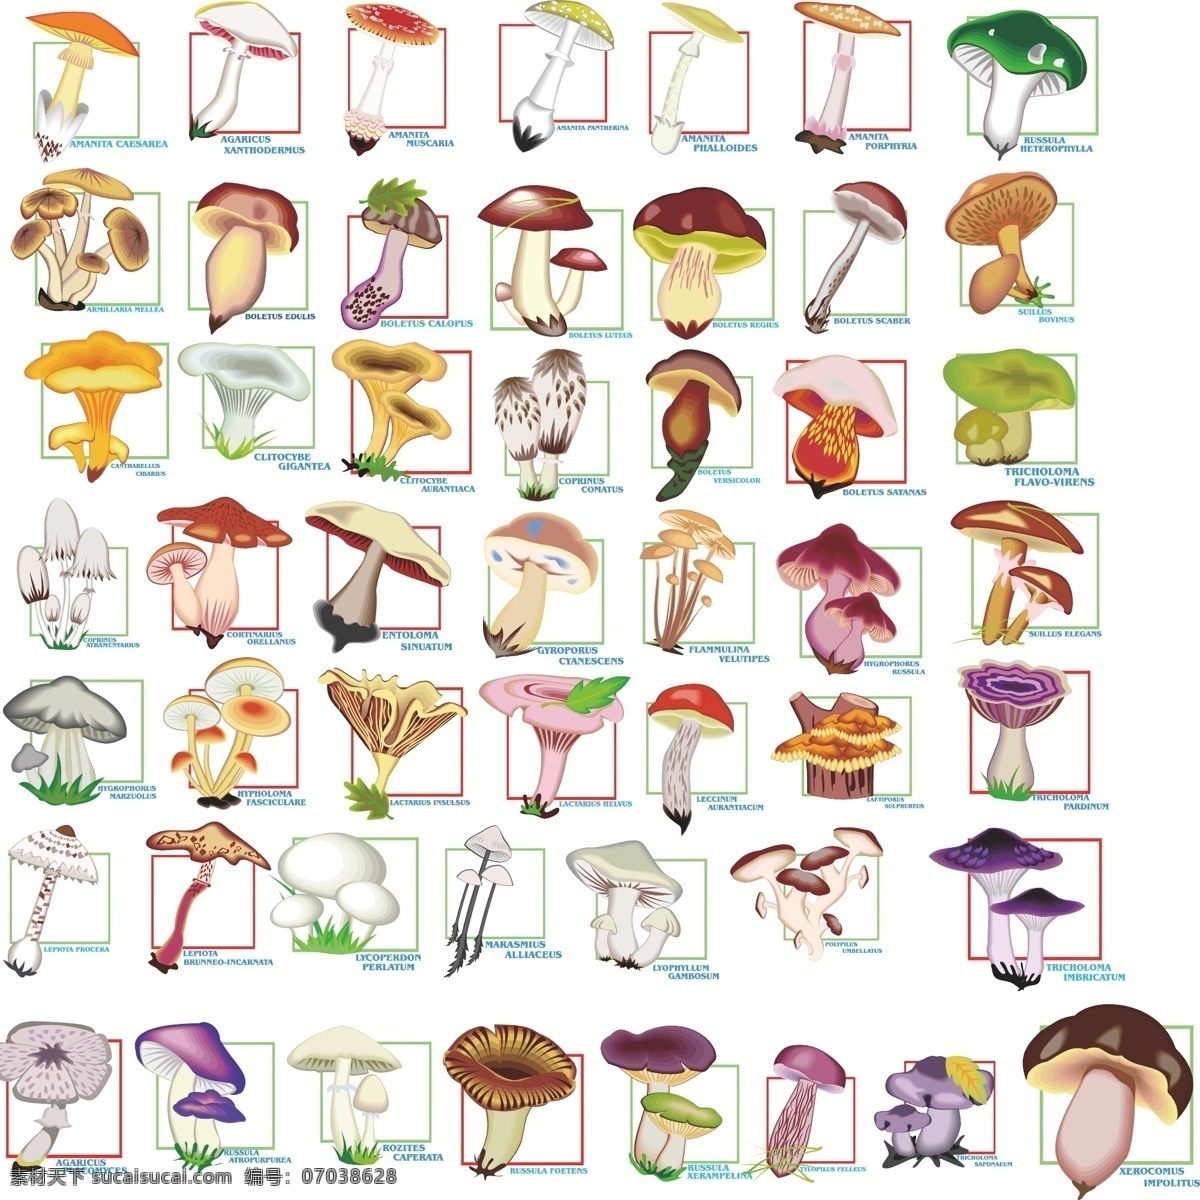 稀有 菌类 矢量 大全 蘑菇 矢量素材 蔬菜 食用菌 矢量图 日常生活